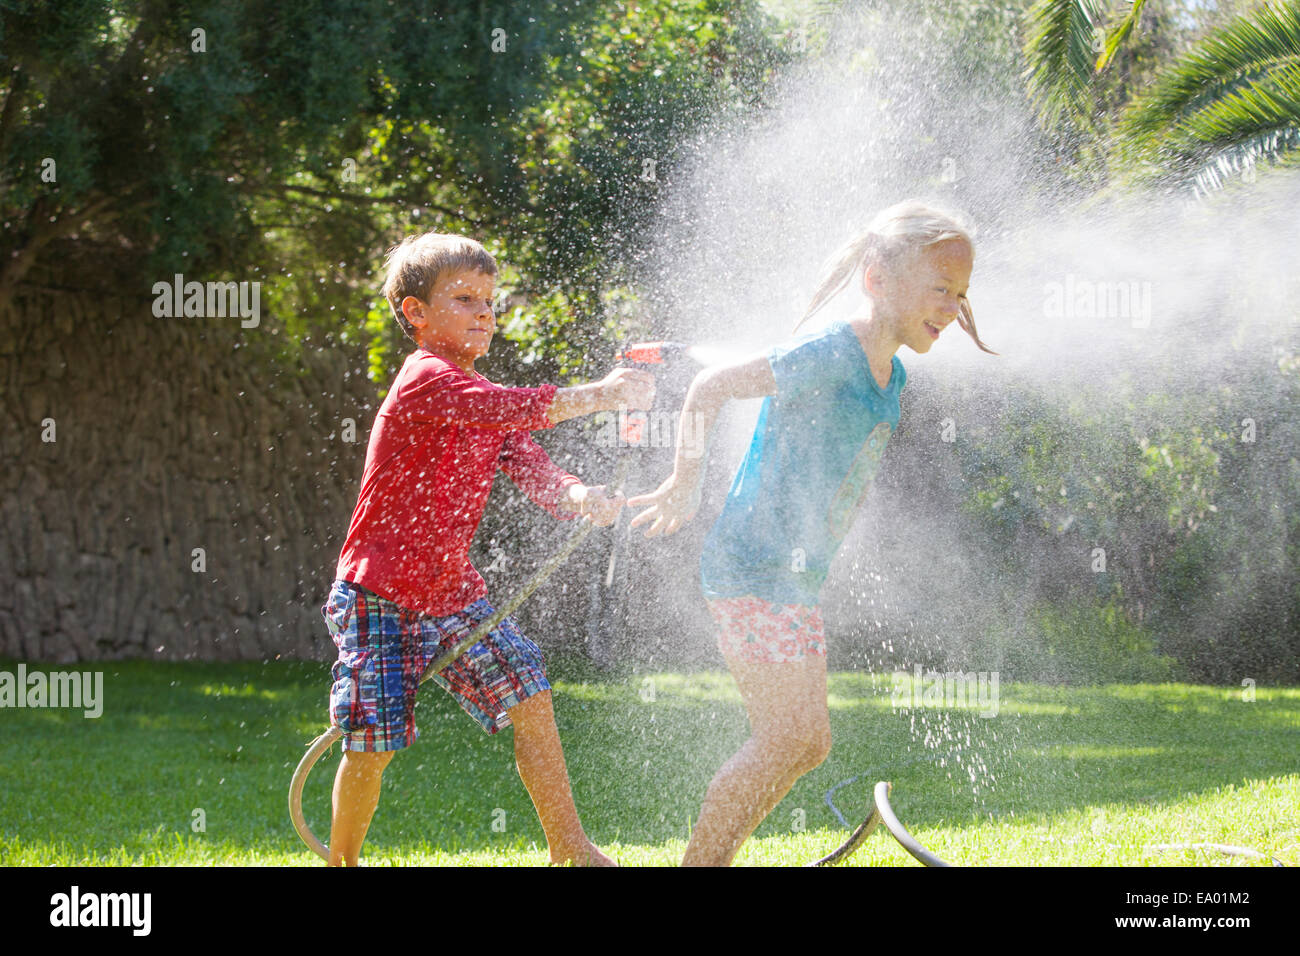 Ragazzo schizzi ragazza in giardino con sprinkler acqua Foto Stock